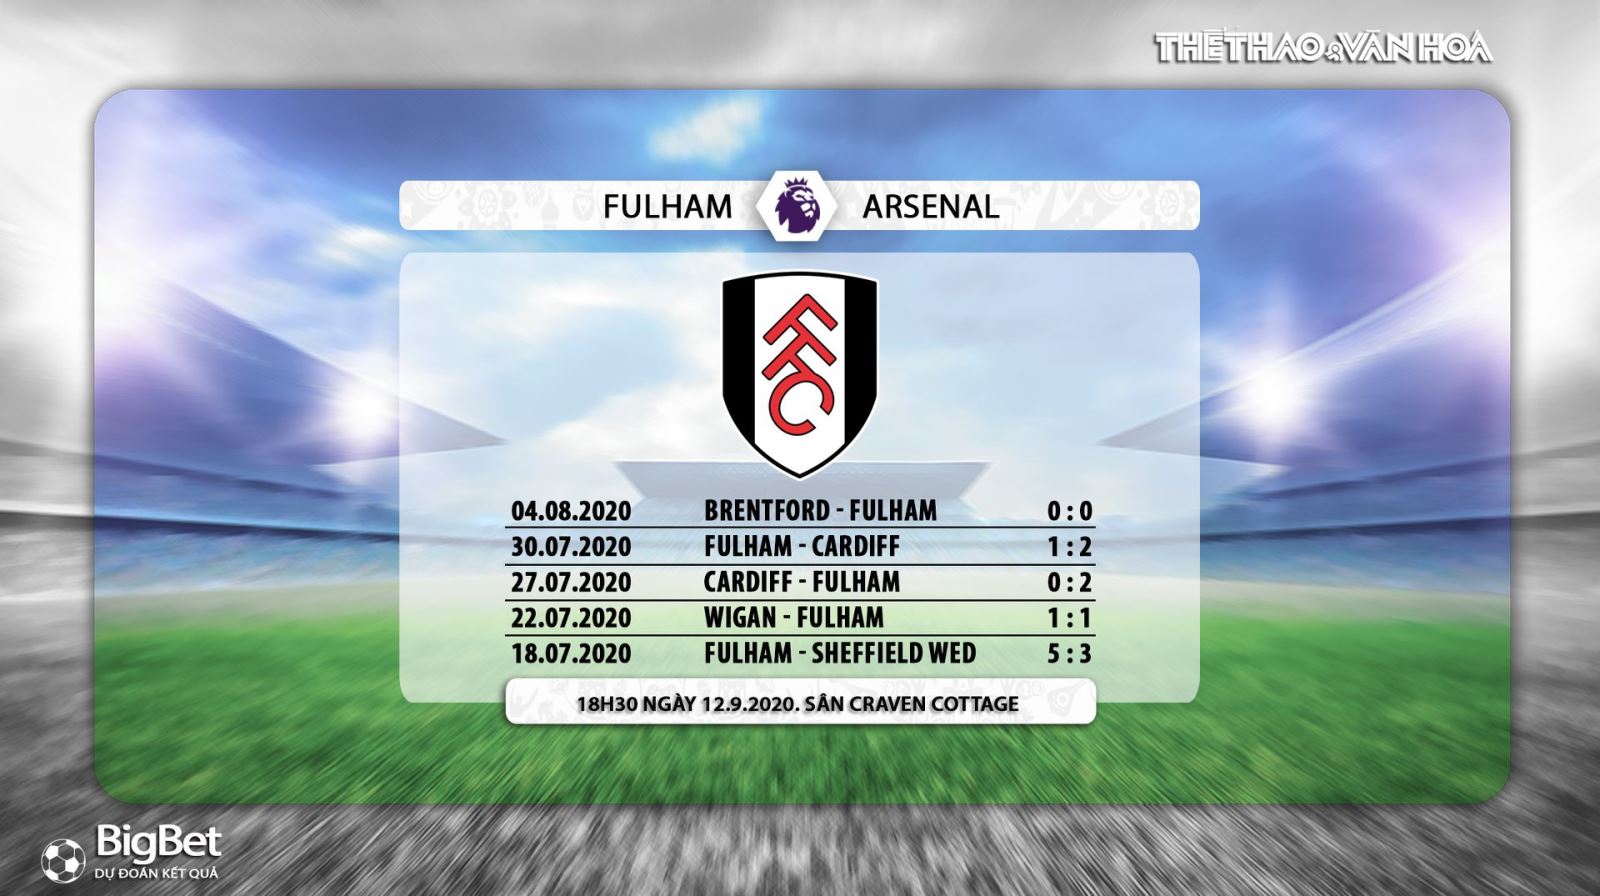 Fullham vs Arsenal, nhận định bóng đá, kèo bóng đá, nhận định bóng đá Fullham vs Arsenal , fulham, arsenal, bóng đá, bóng đá hôm nay, nhận định, kèo thơm 